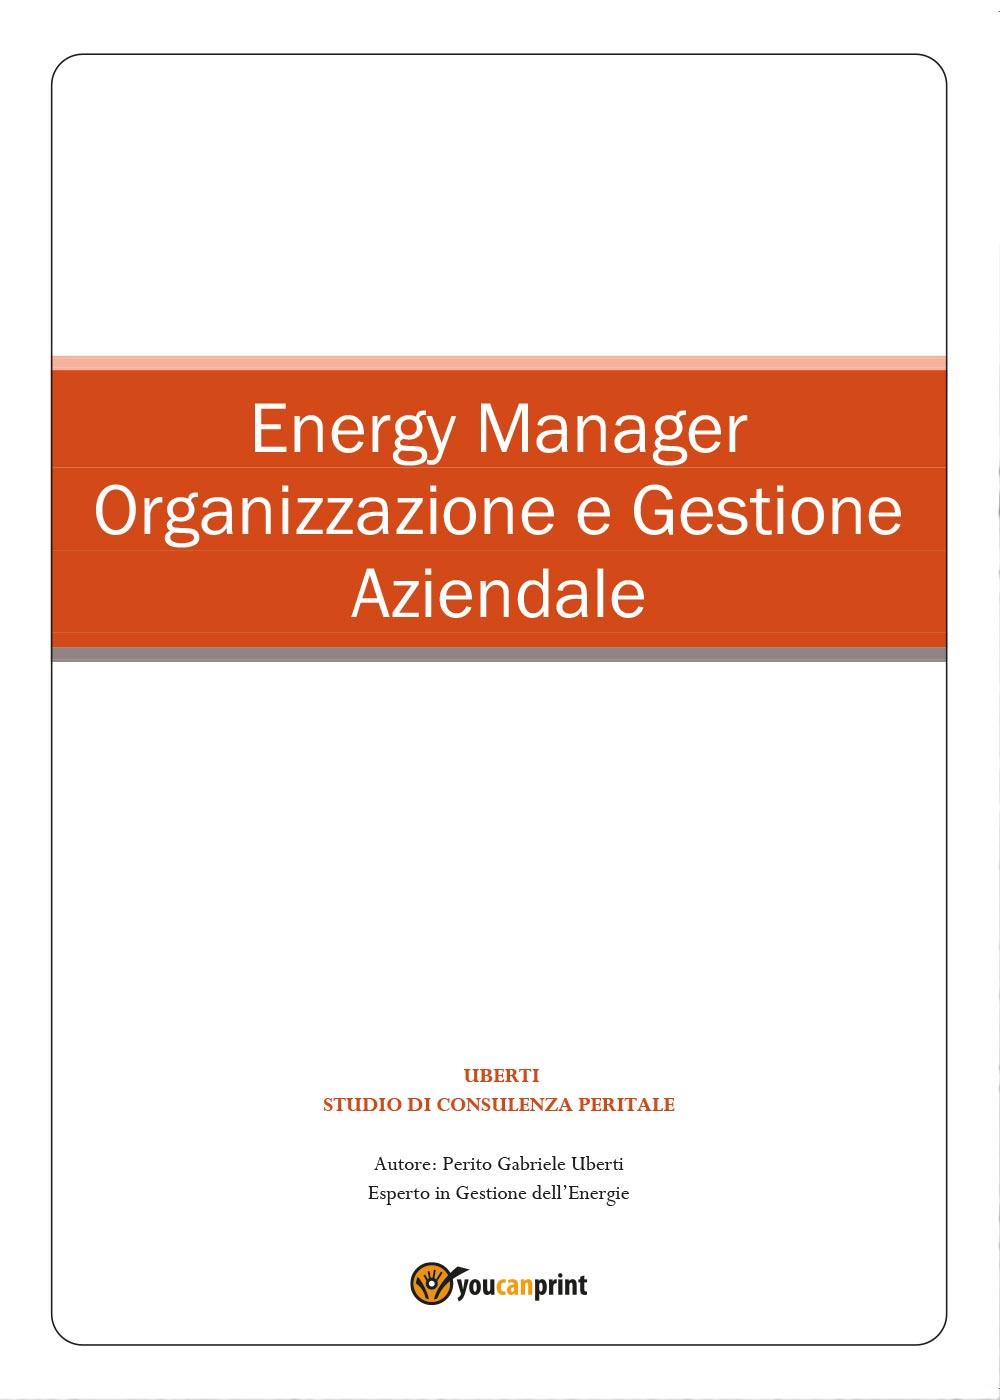 Energy Manager - Organizzazione e Gestione Aziendale